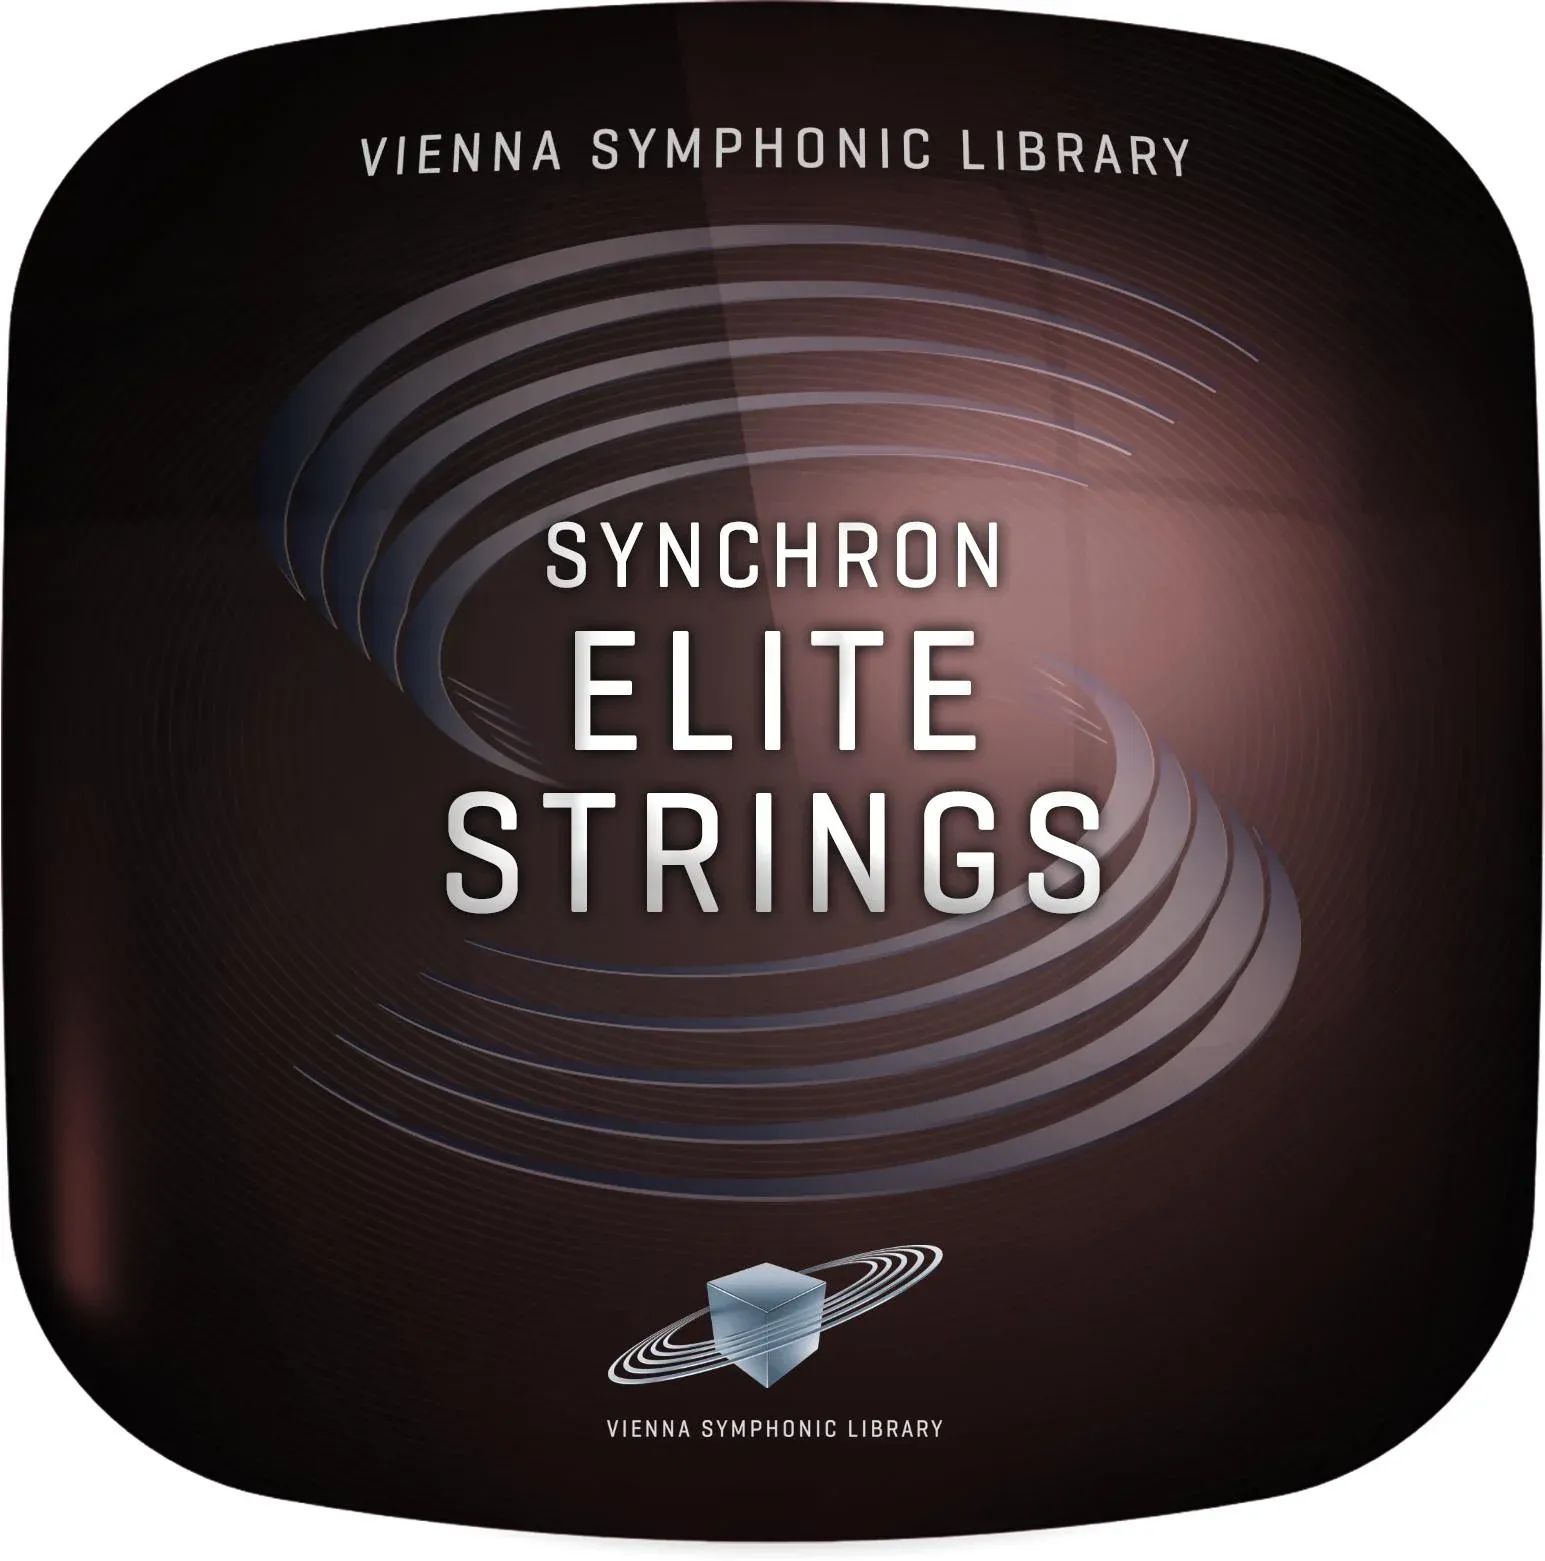 

Венская симфоническая библиотека Synchron Elite Strings — обновление до полной библиотеки